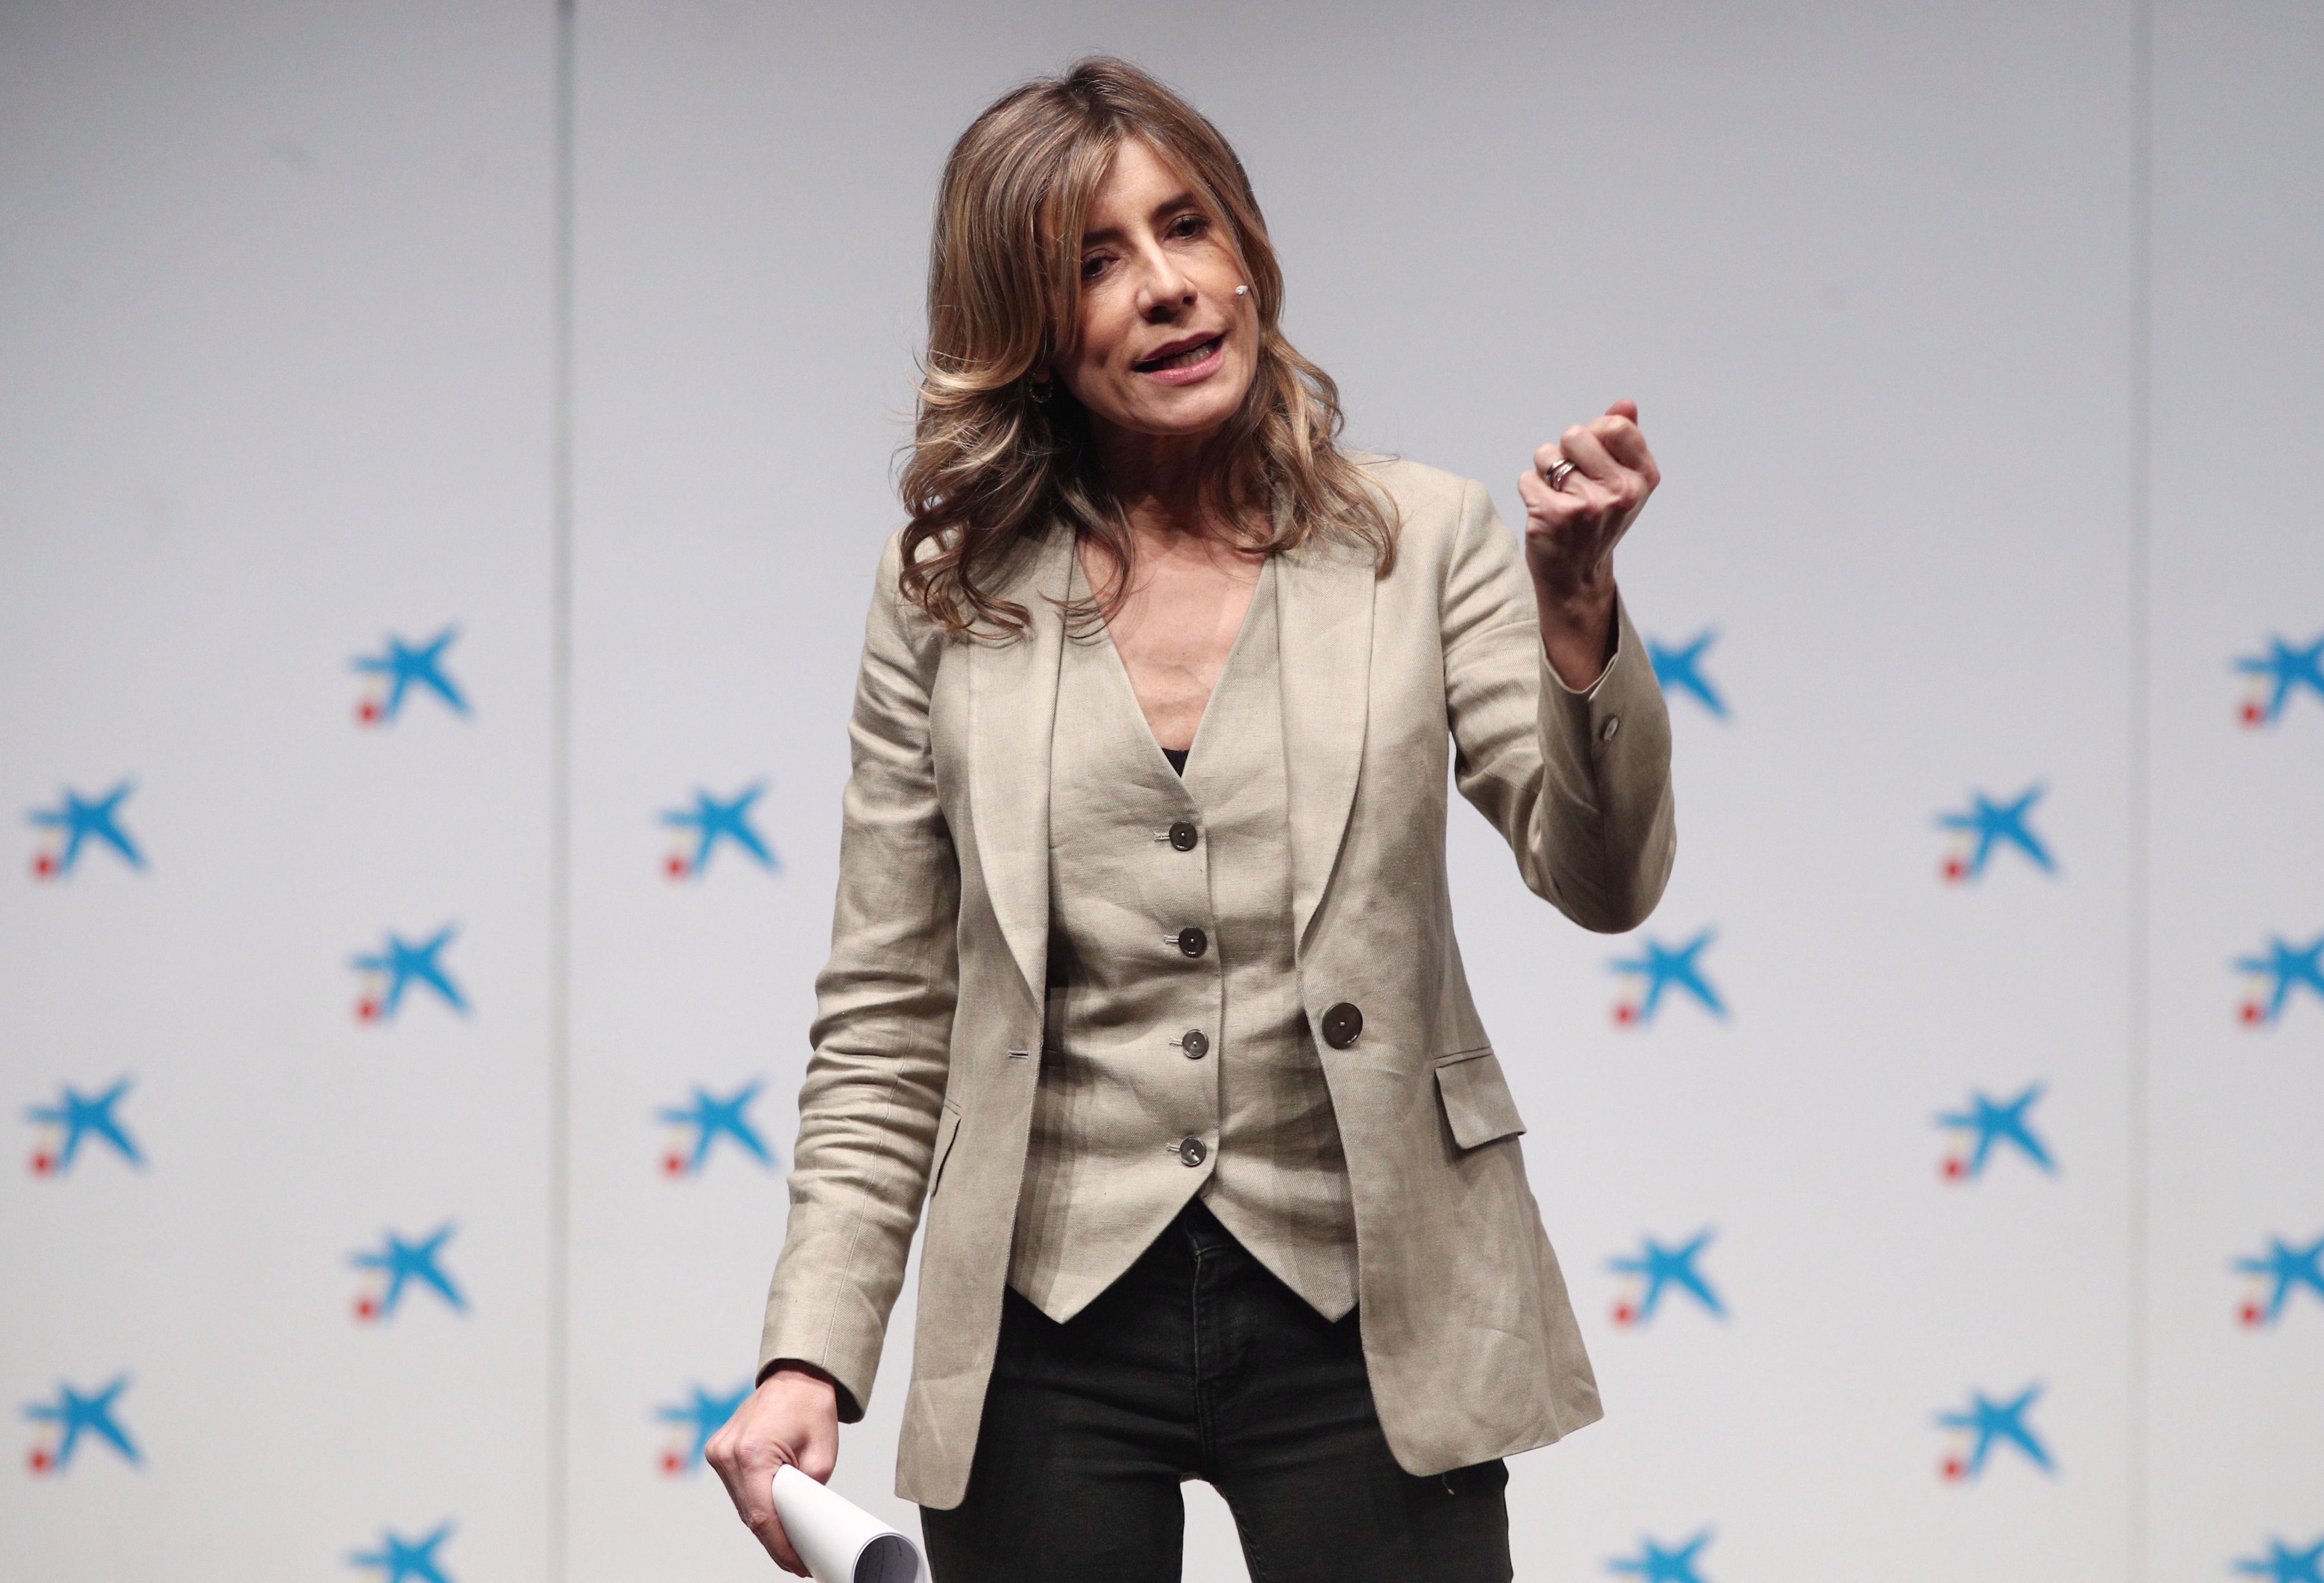 Begoña Gómez, mujer de Pedro Sánchez, una mujer independiente experta en marketing